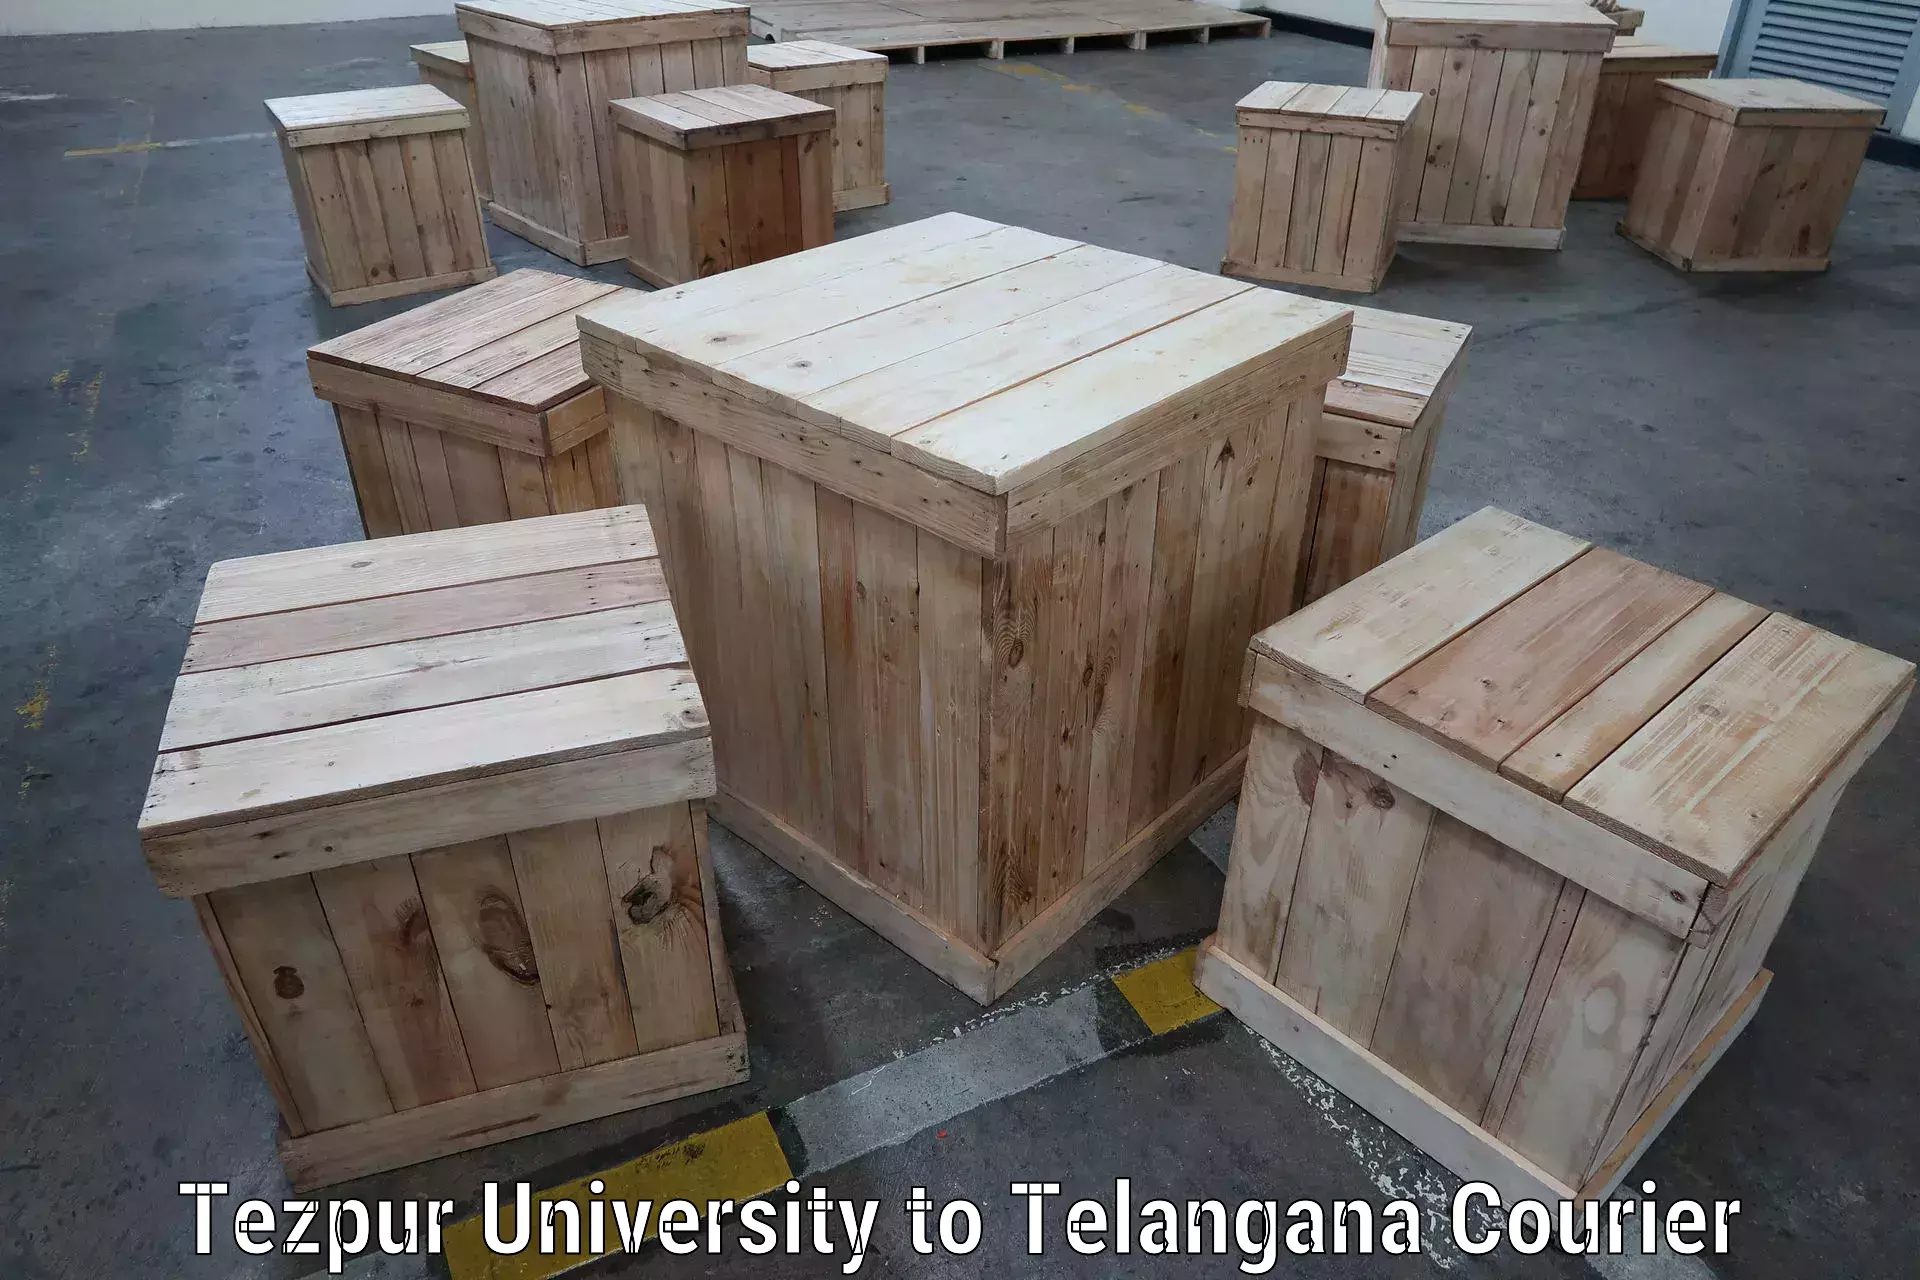 Ocean freight courier Tezpur University to Kalwakurthy